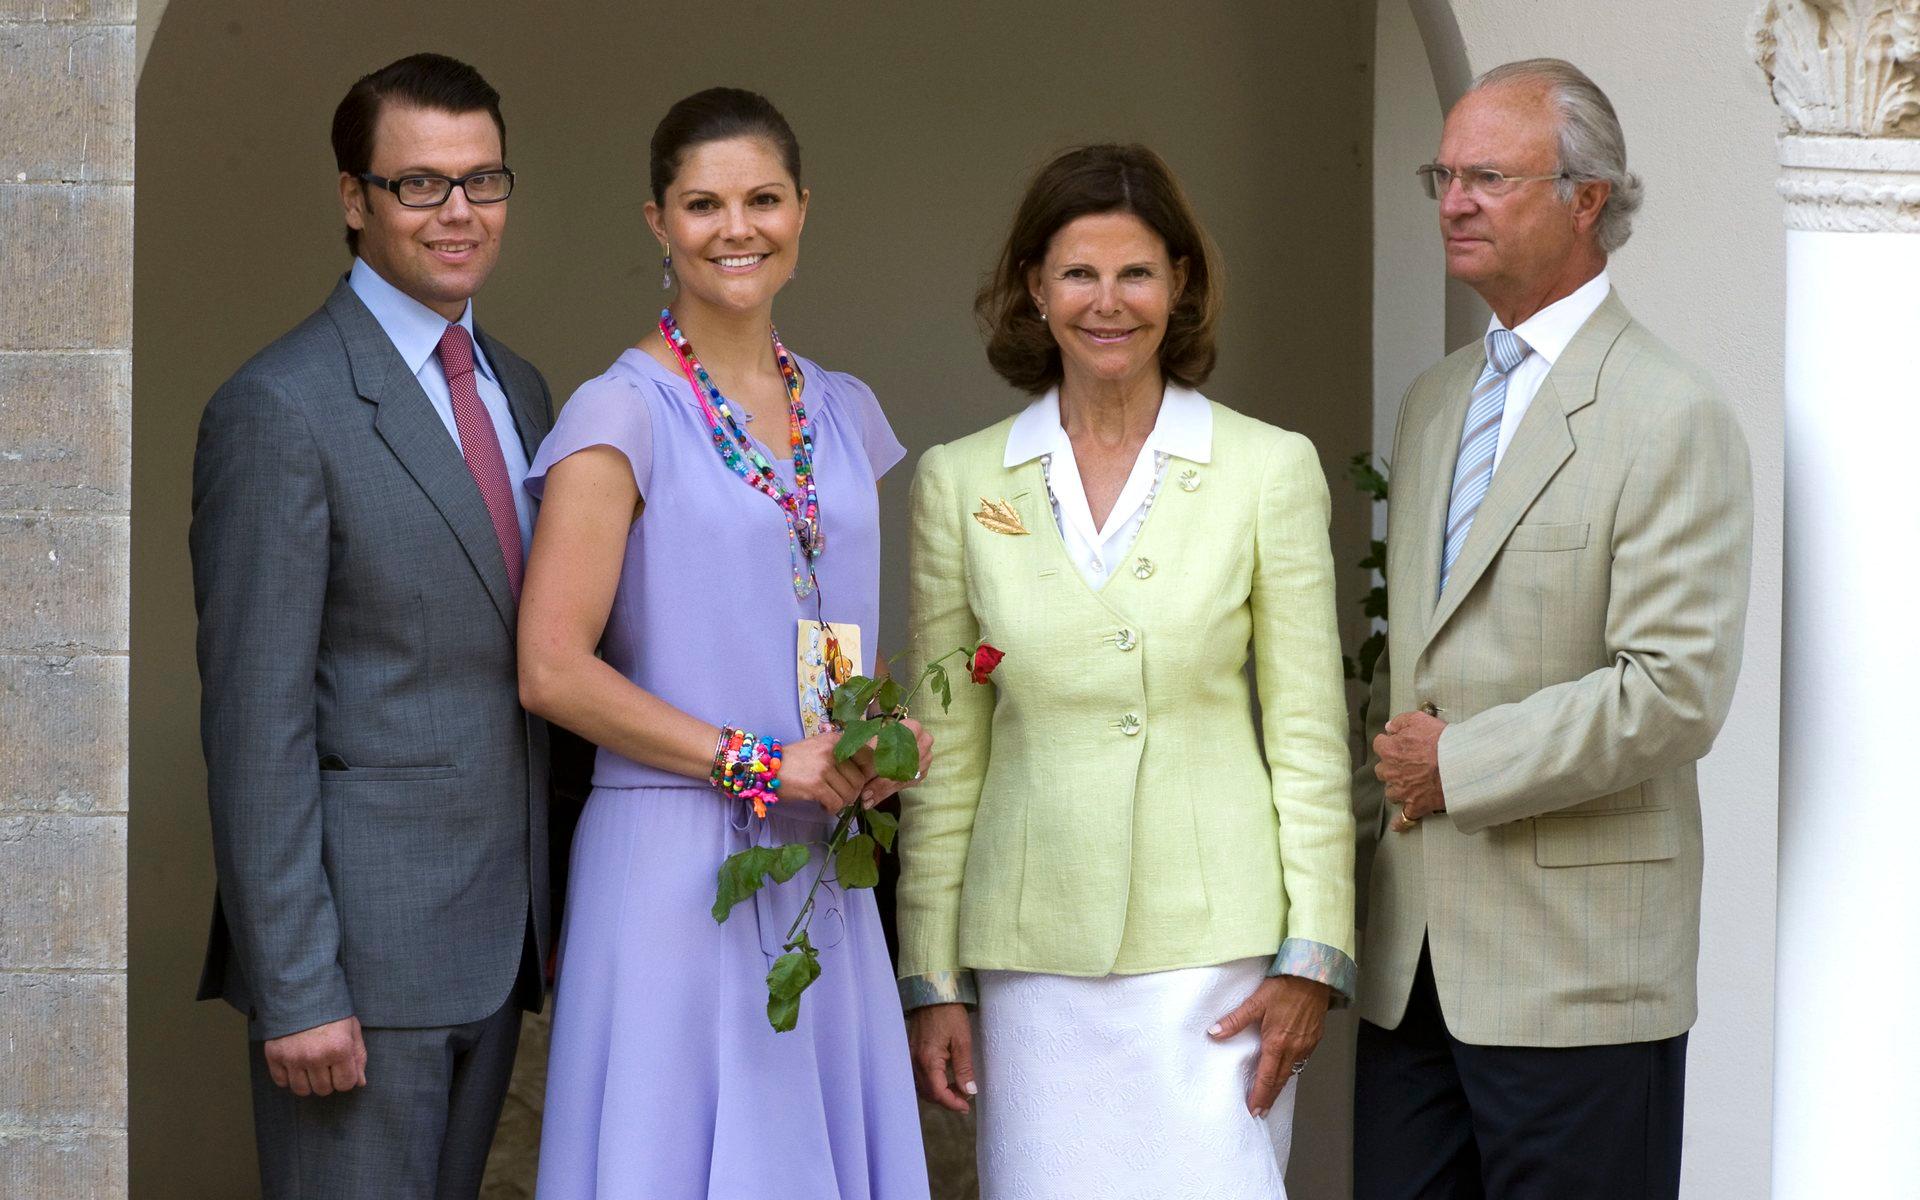 2009 hade kronprinsessan Victoria med sig fästmannen Daniel Westling när hon firade sin födelsedag på Solliden med kung Carl XVI Gustaf och drottning Silvia. Arkivbild.